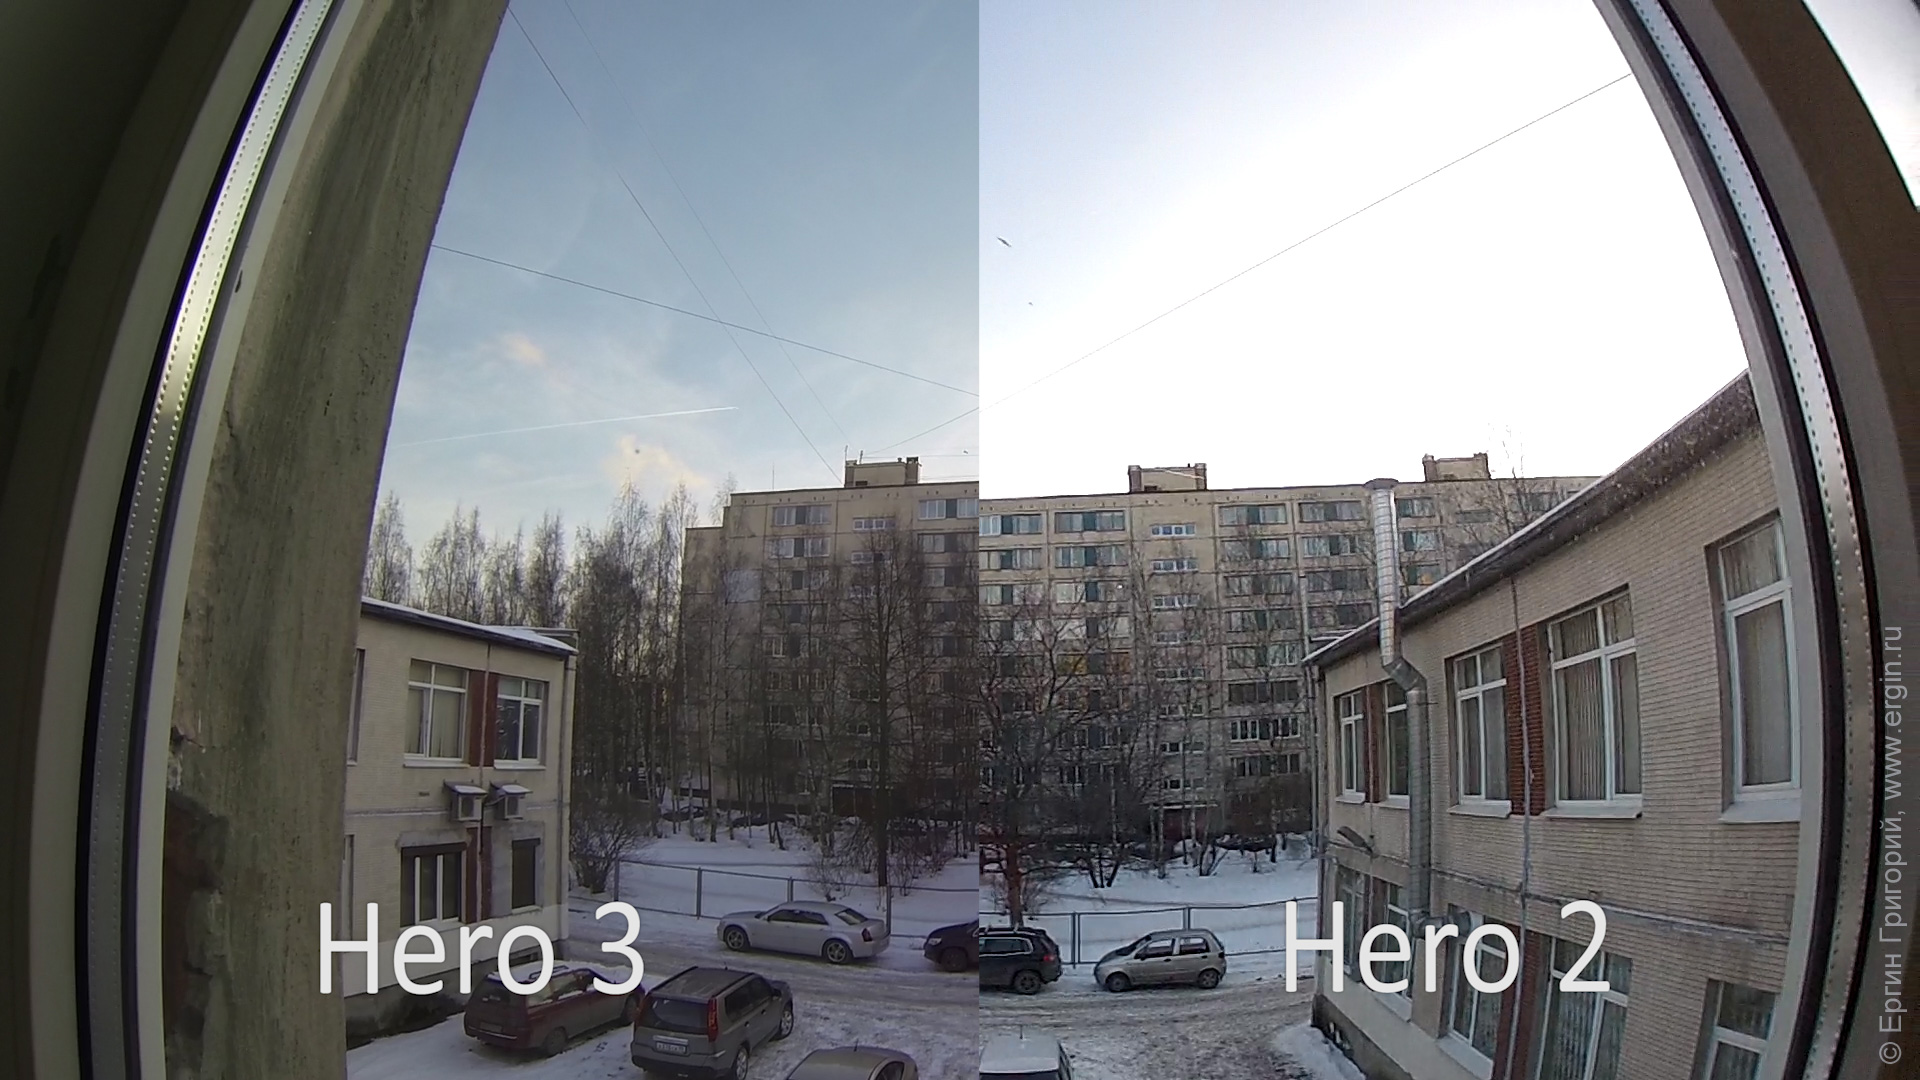 Сравнение GoPro Hero 3 против Hero 2 детали проработки неба засветы